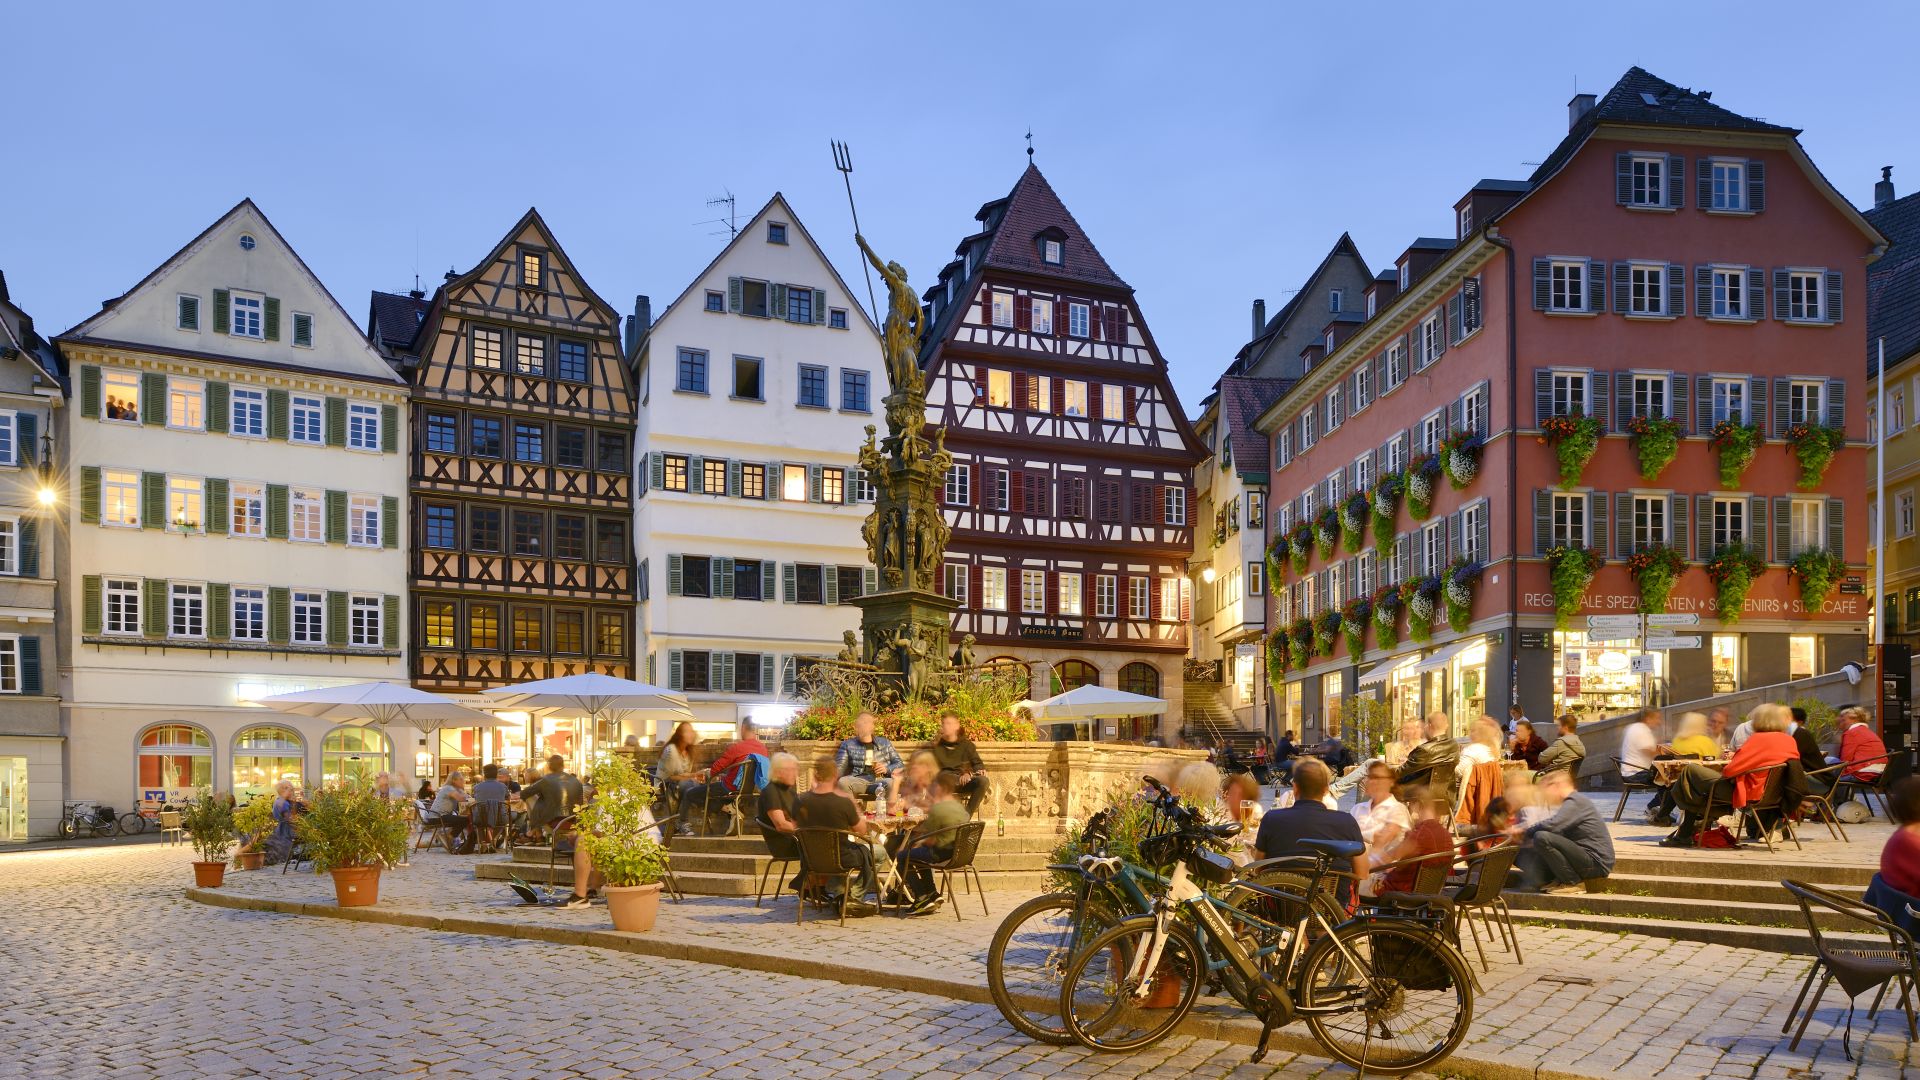 Tübingen: Marketplace in the evening